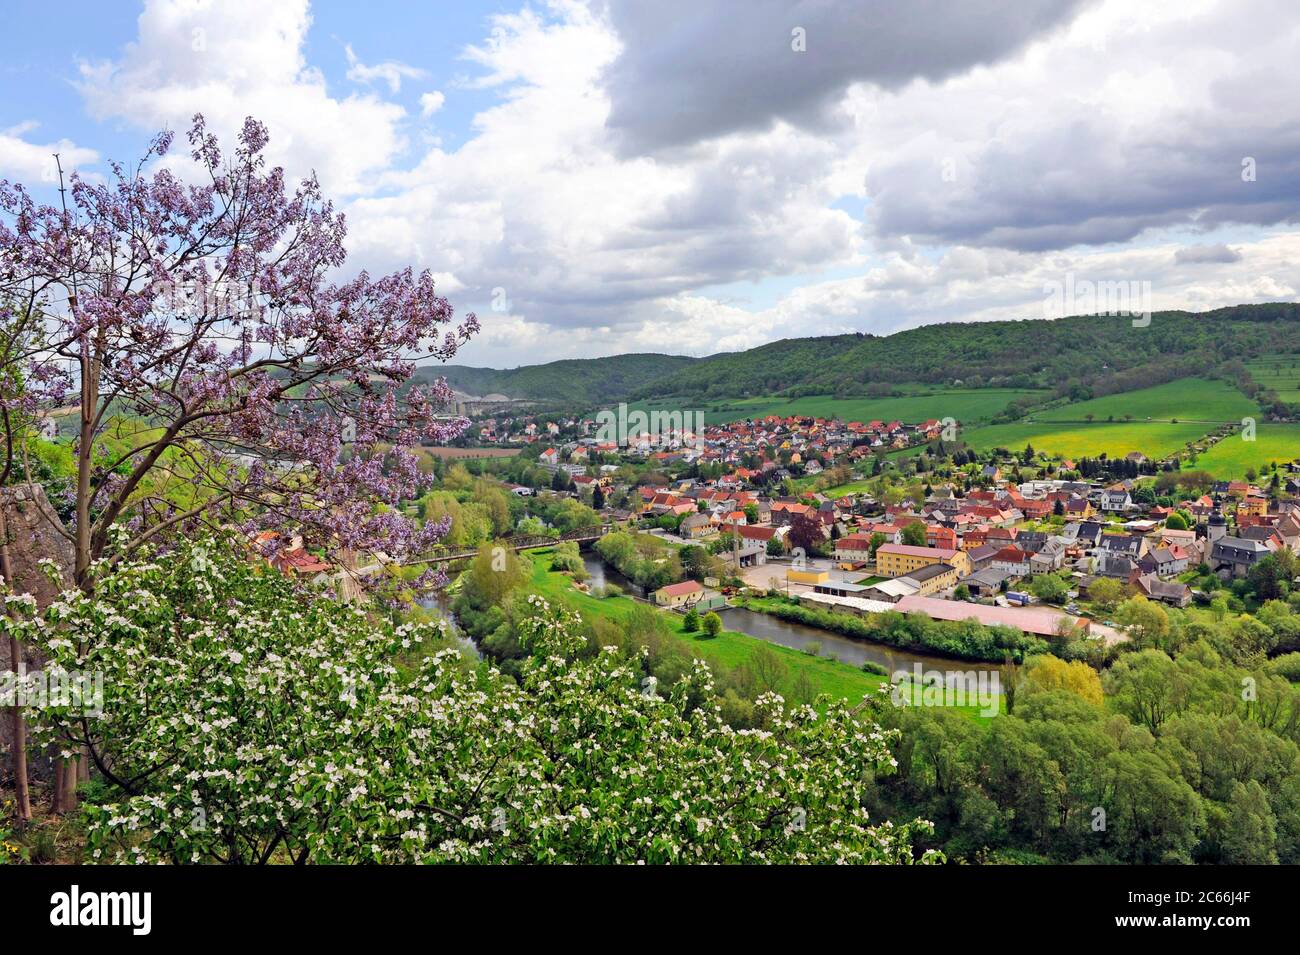 Vue sur la roche calcaire de Saale et la ville de Dornburg depuis les terrasses des châteaux de Dornburg, vue sur la vallée de la Saale et les hauteurs boisées de la forêt de Thuringe Banque D'Images